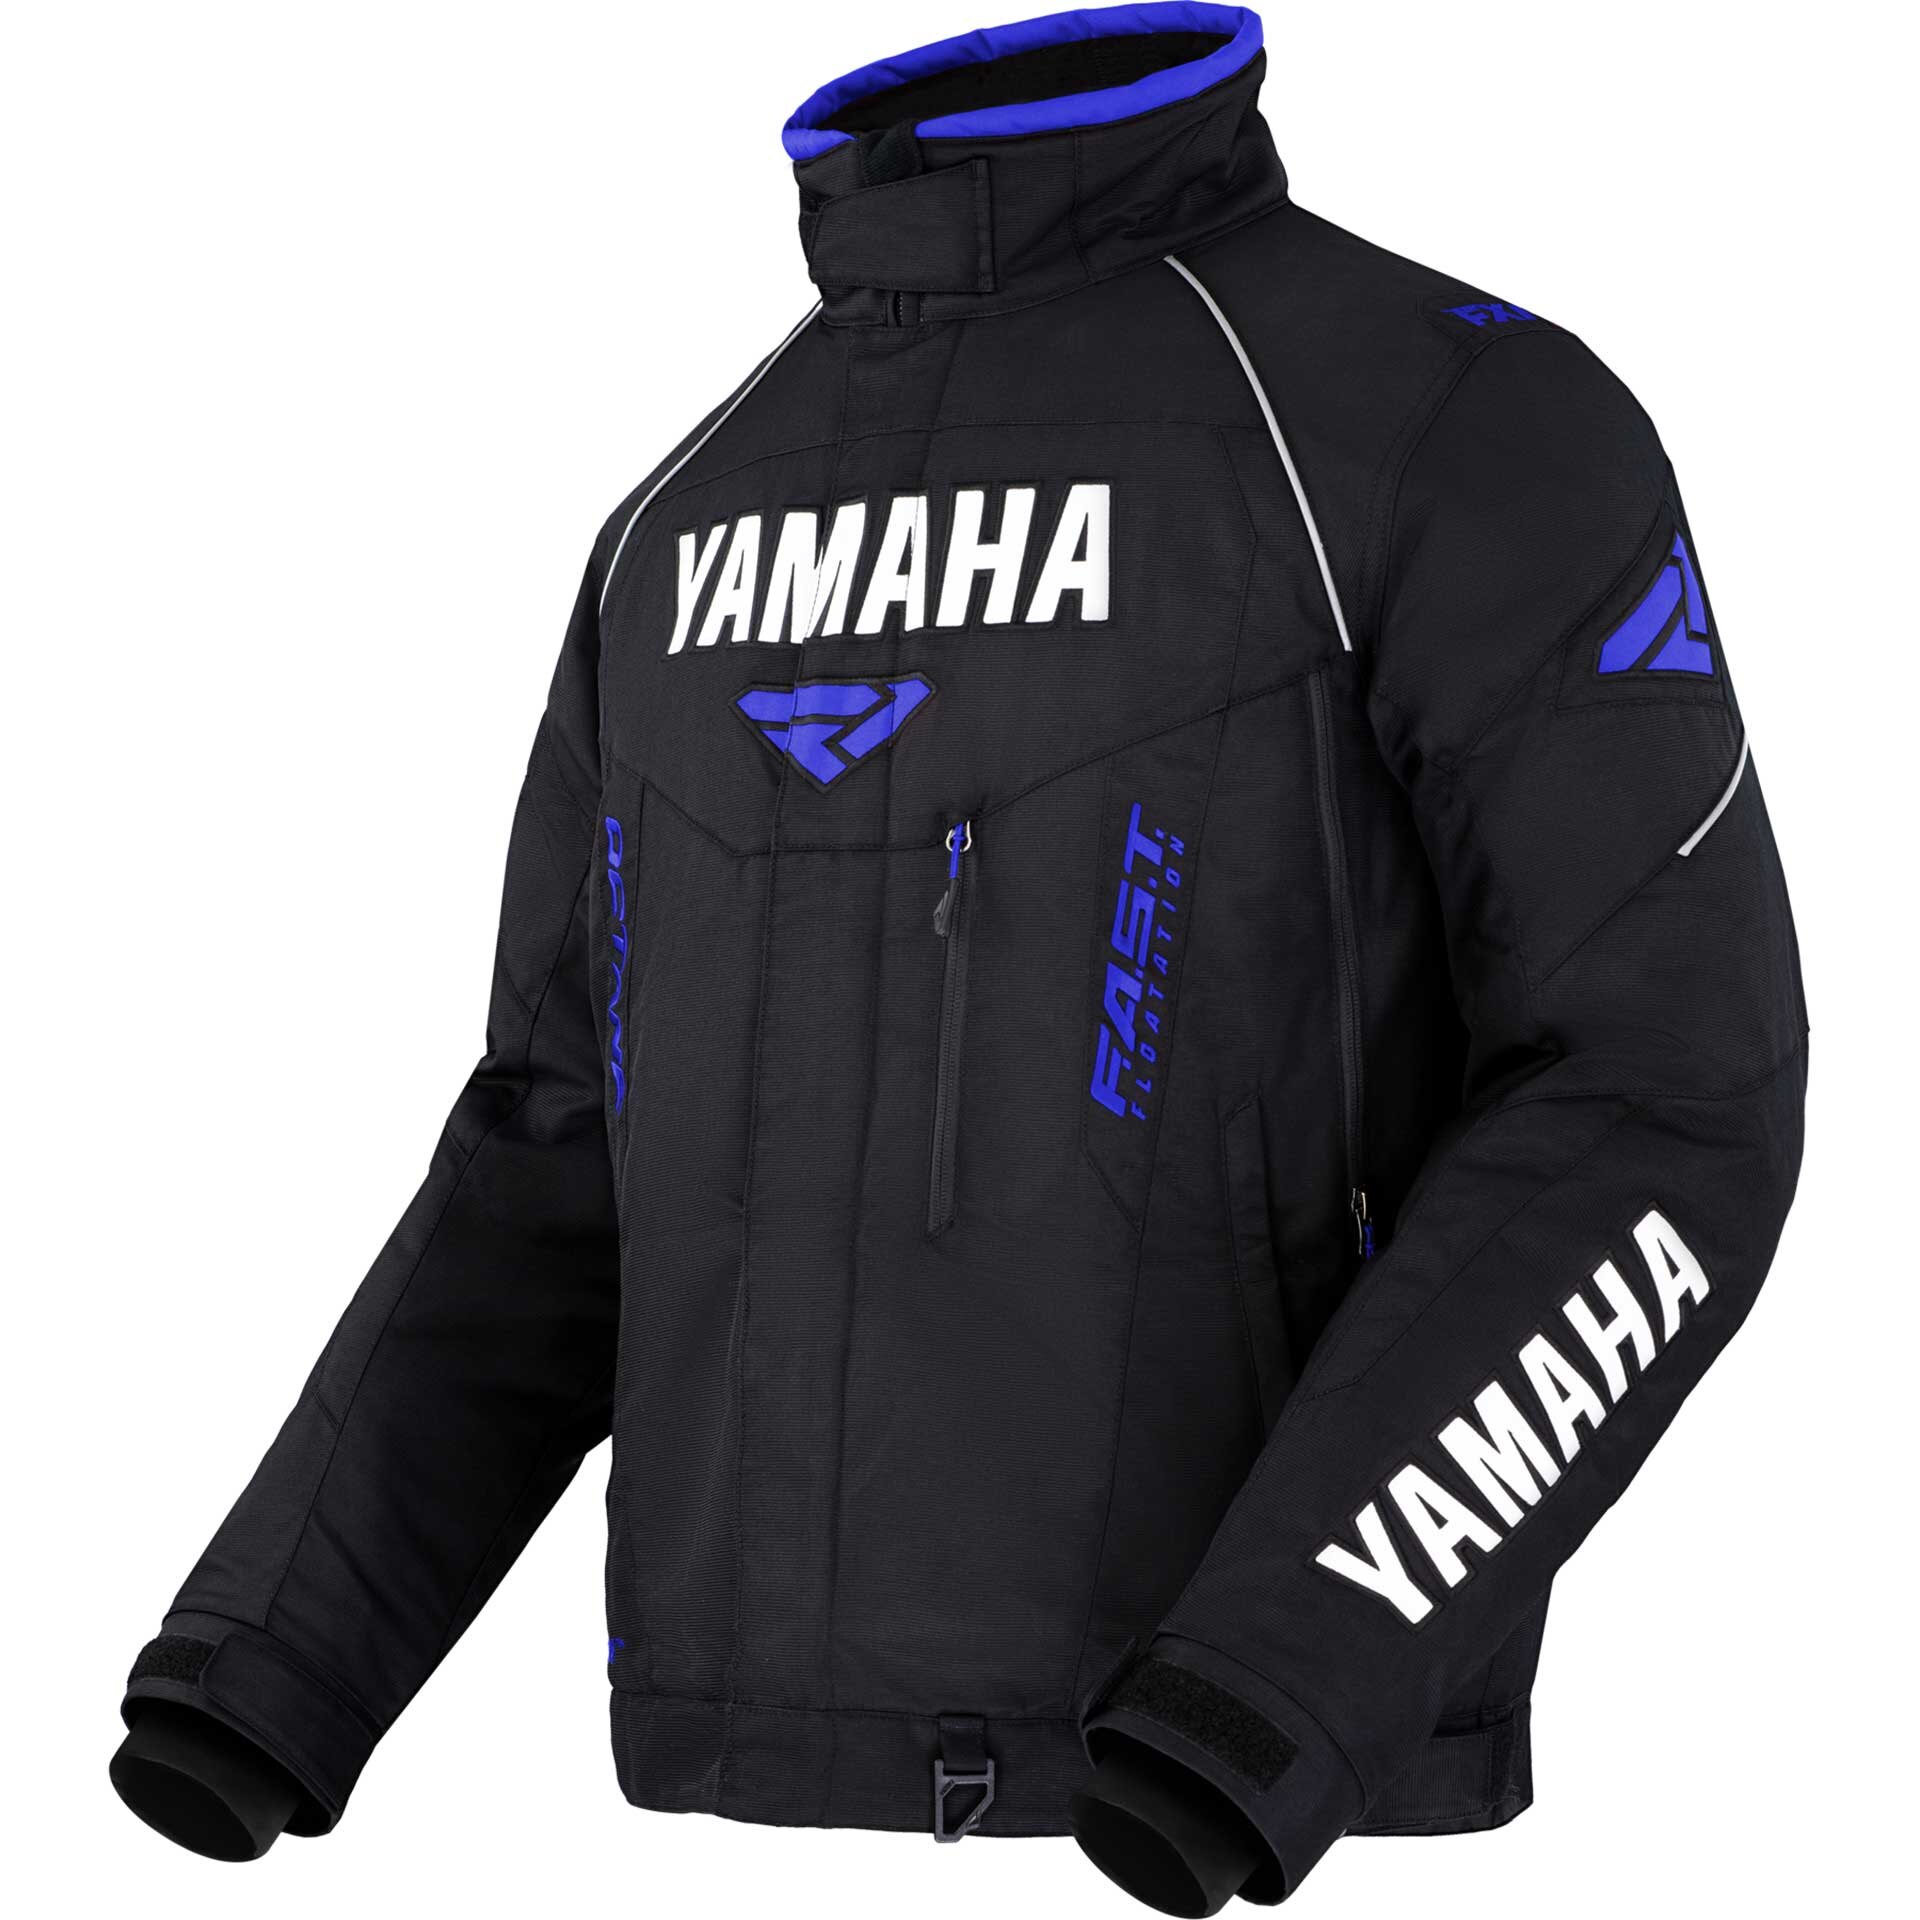 Yamaha Octane Jacket by FXR®